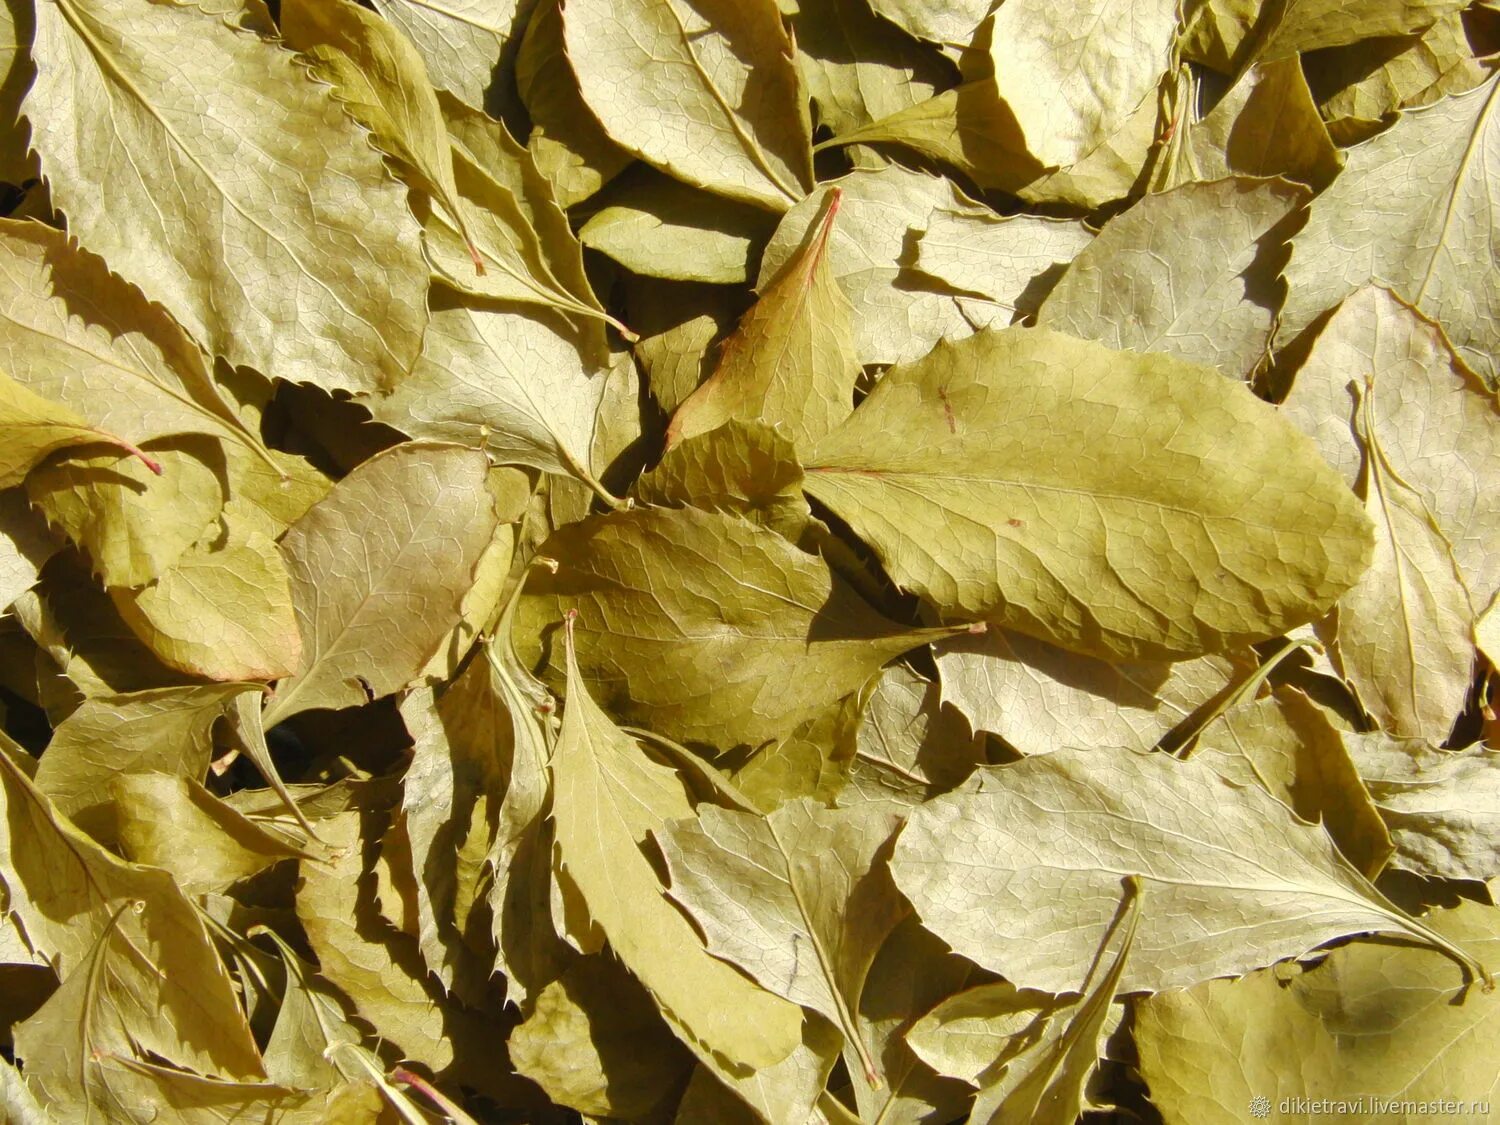 Сушеные листья купить